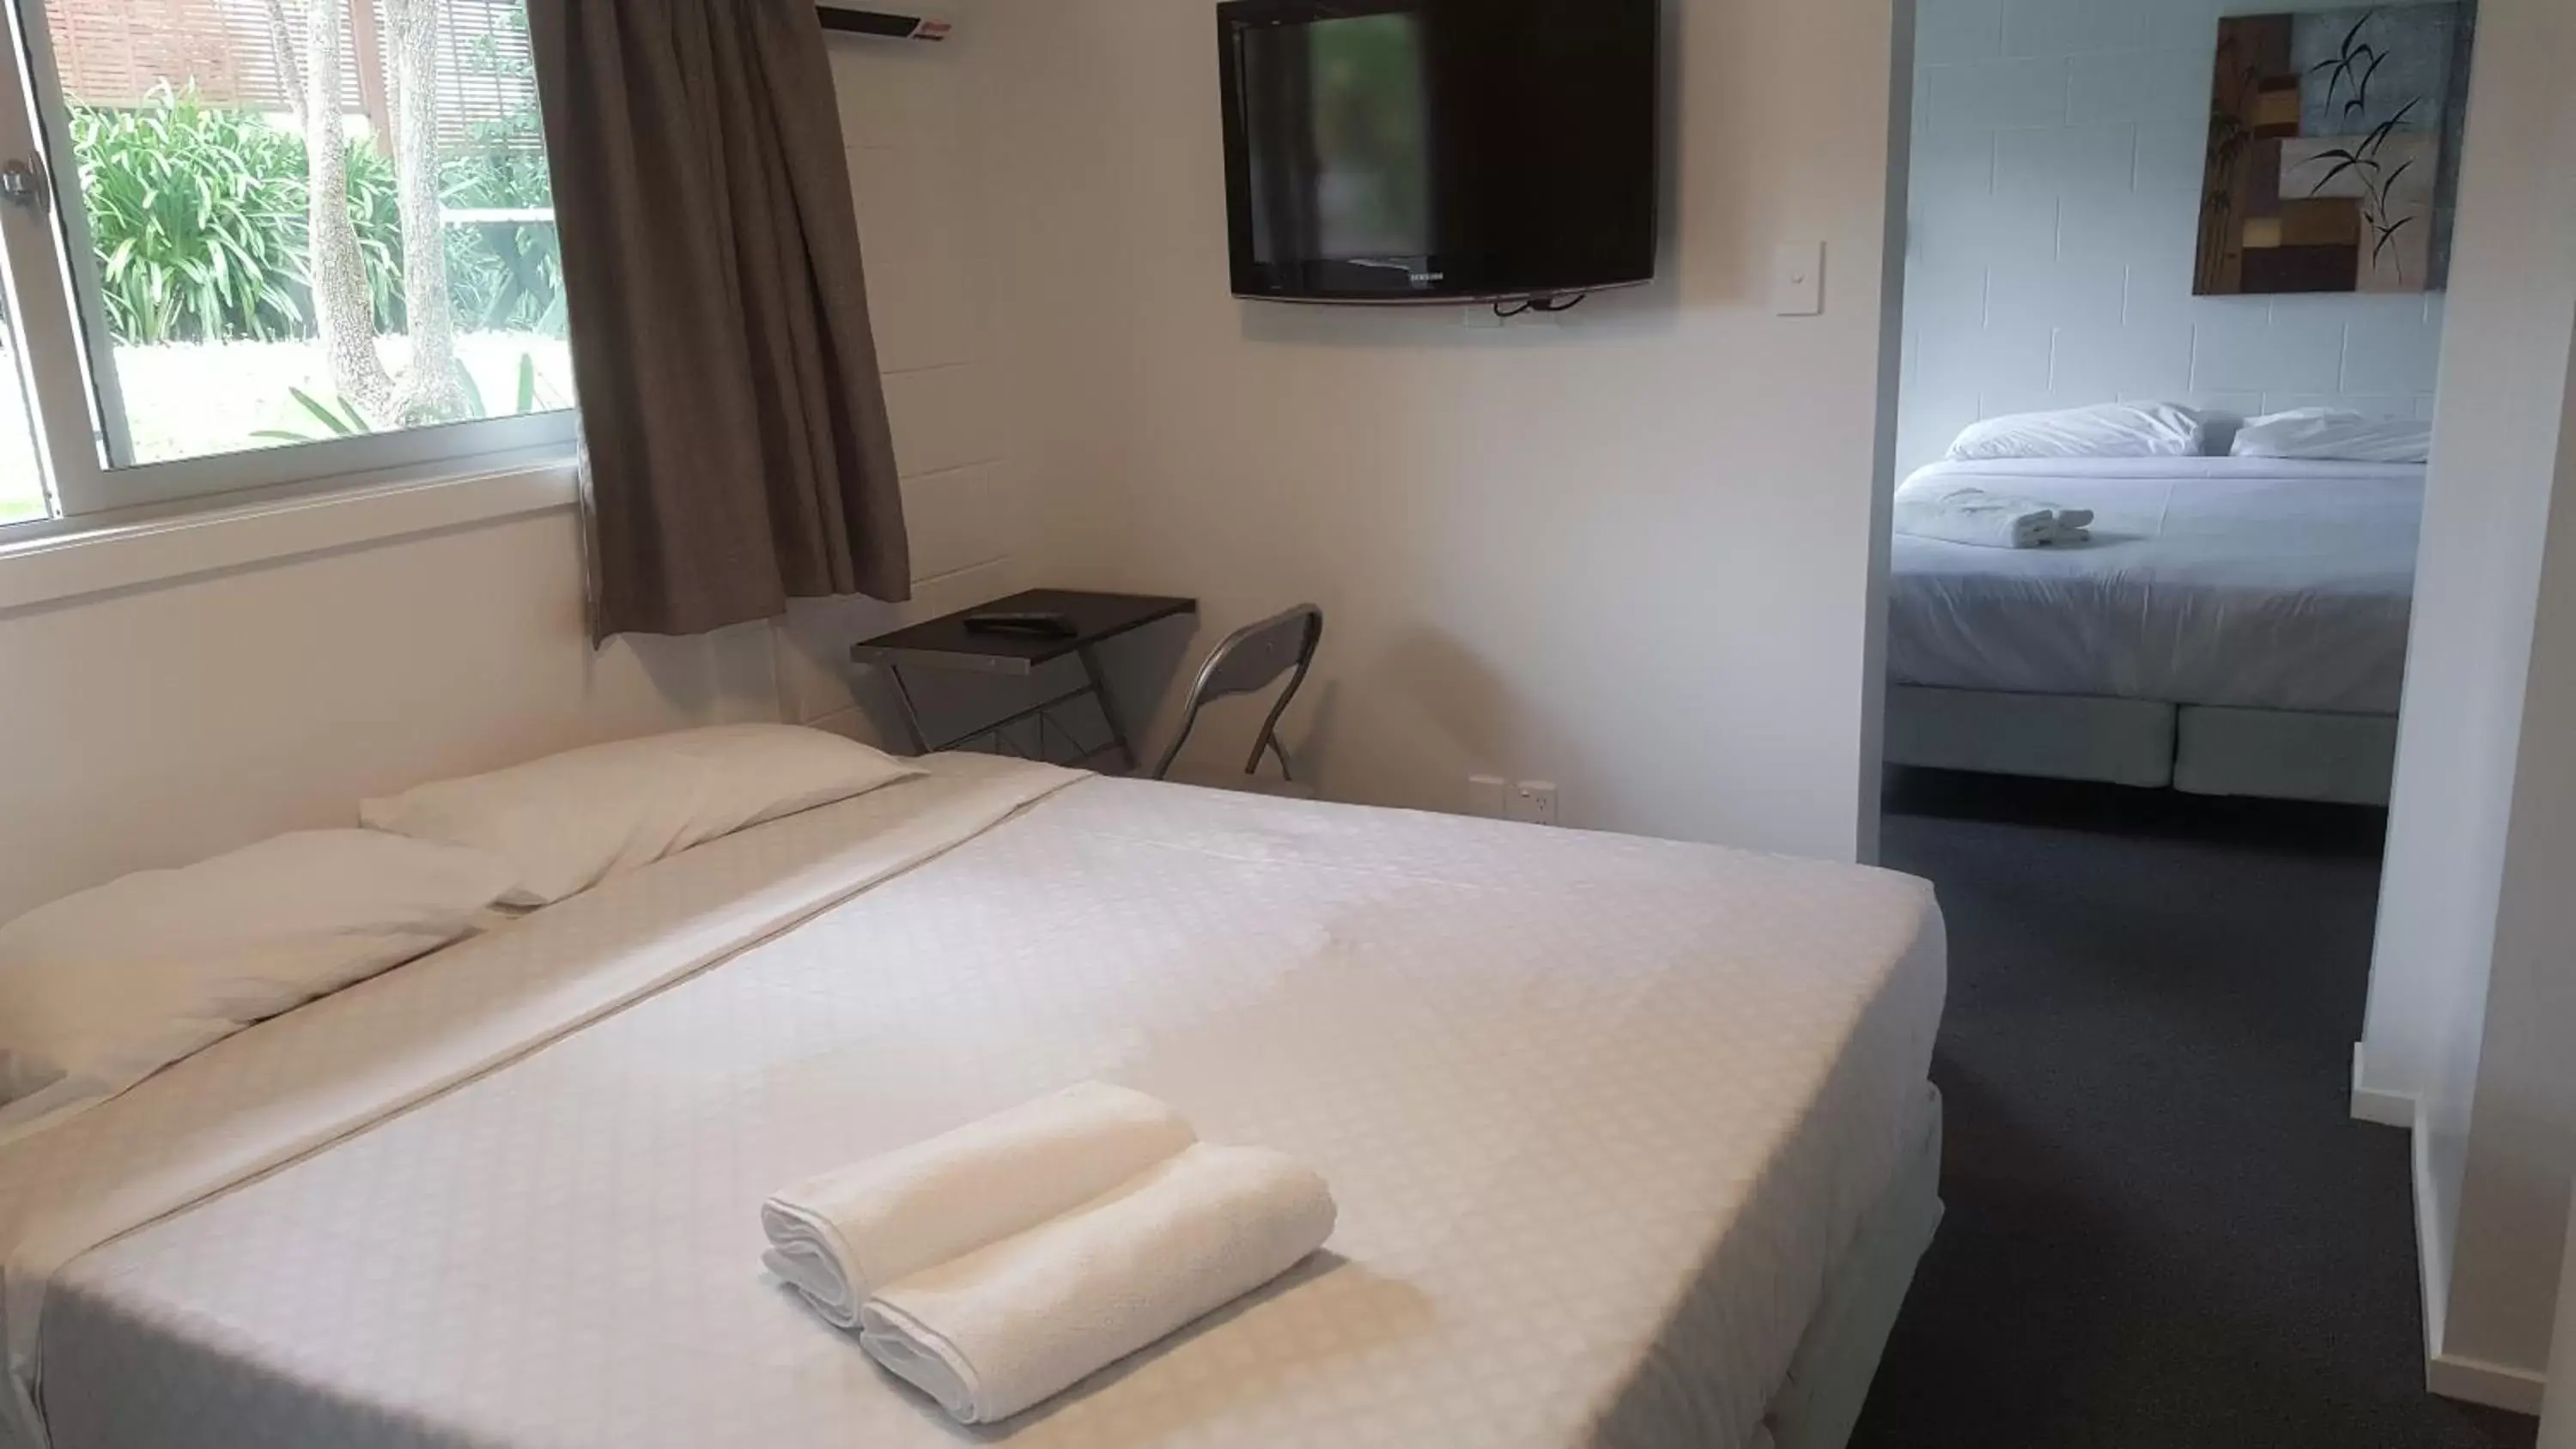 Bedroom, Bed in Siesta Motel